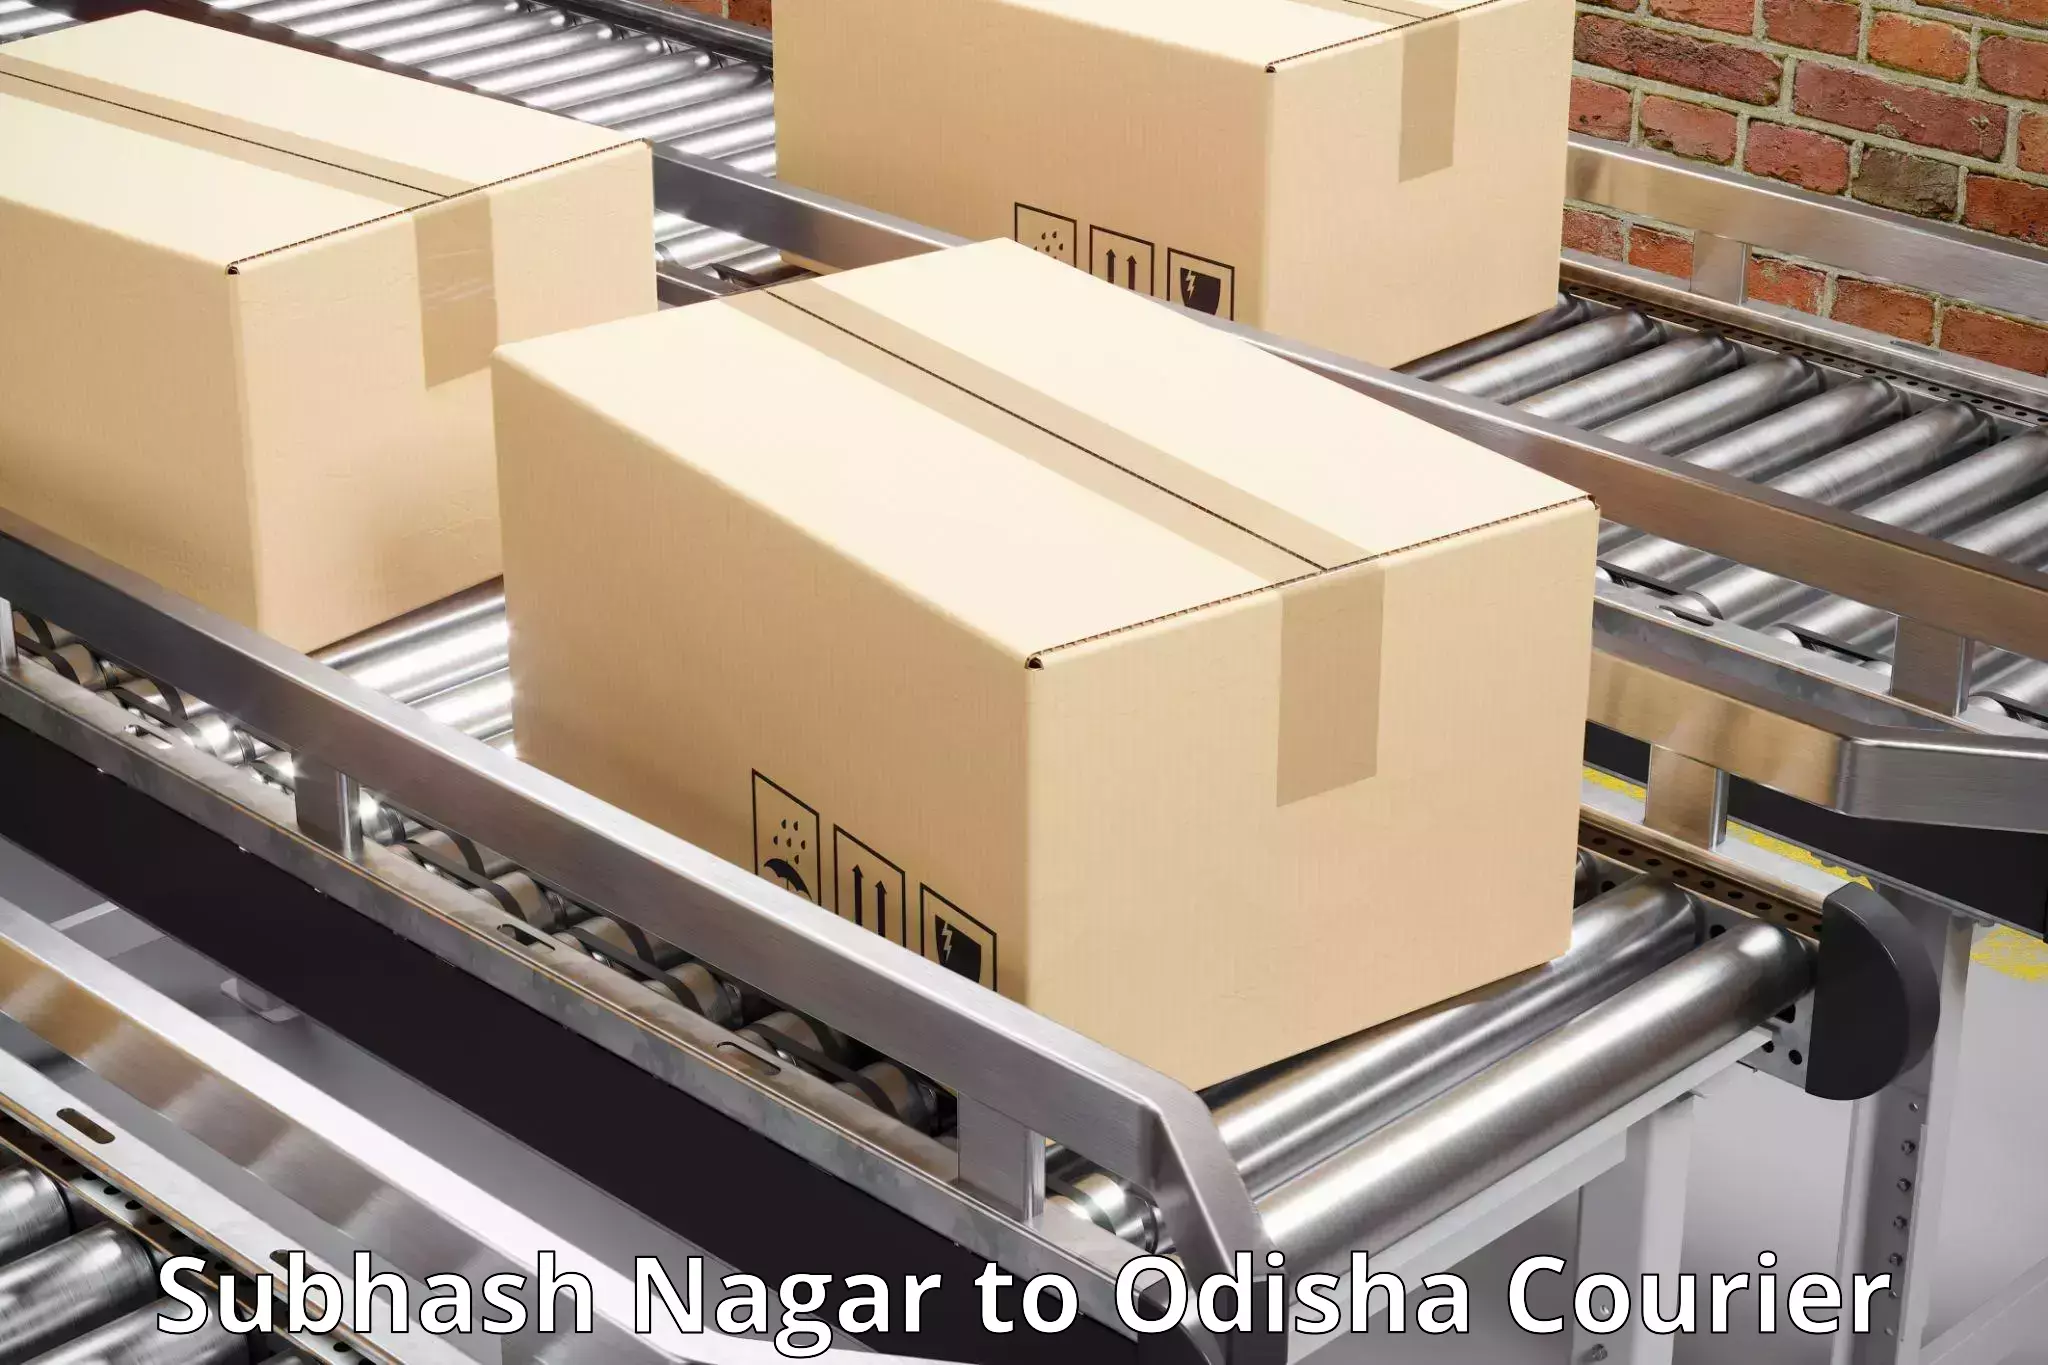 Cargo delivery service Subhash Nagar to Kishorenagar